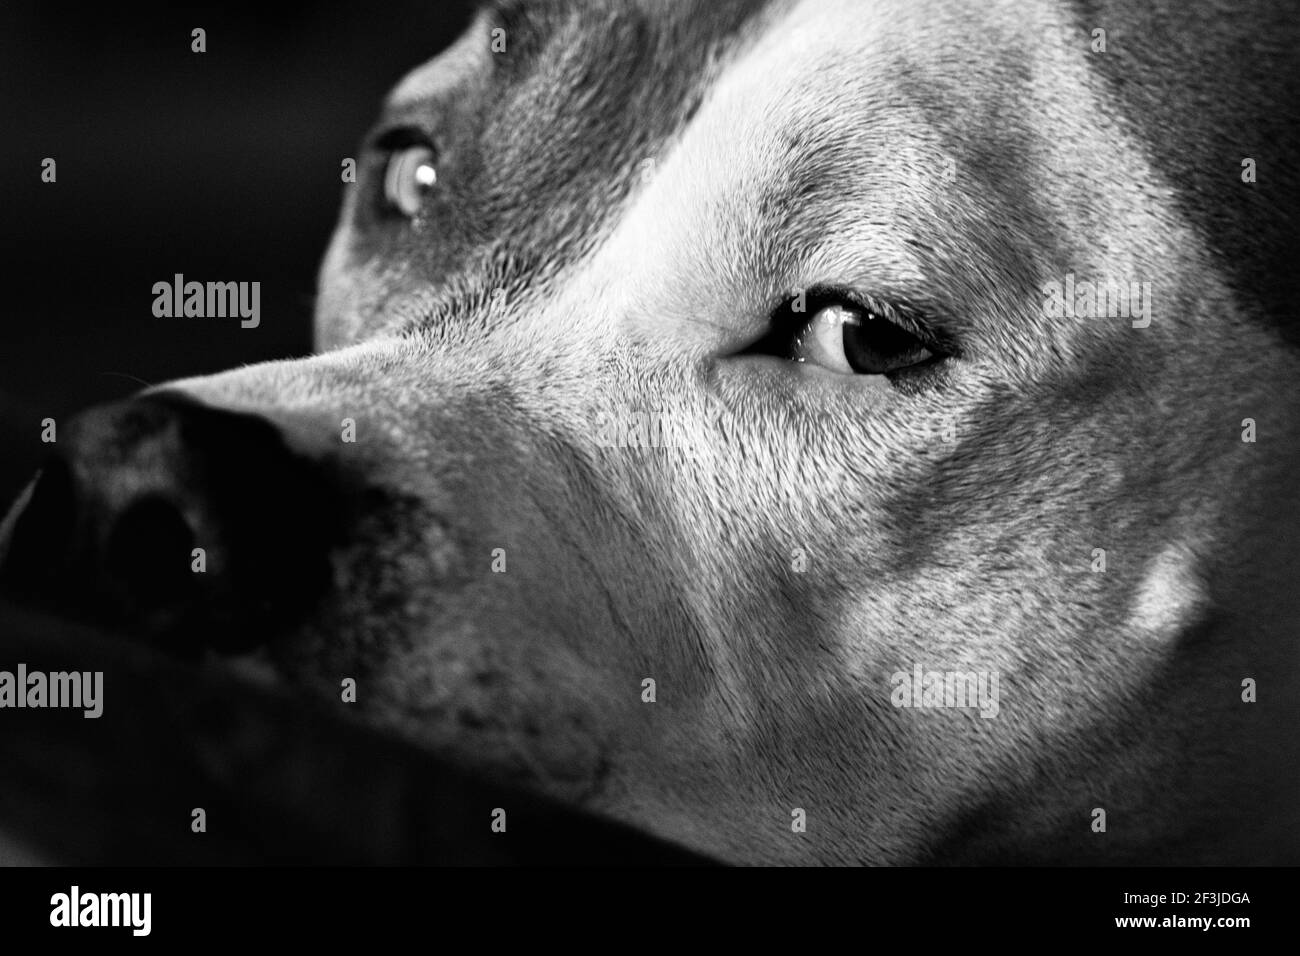 Un cane di razza mista (American Staffordshire Pit Bull Terrier e American Pit Bull Terrier) (Canis lupus familiaris) si affaccia fuori dall'angolo del suo occhio. Foto Stock